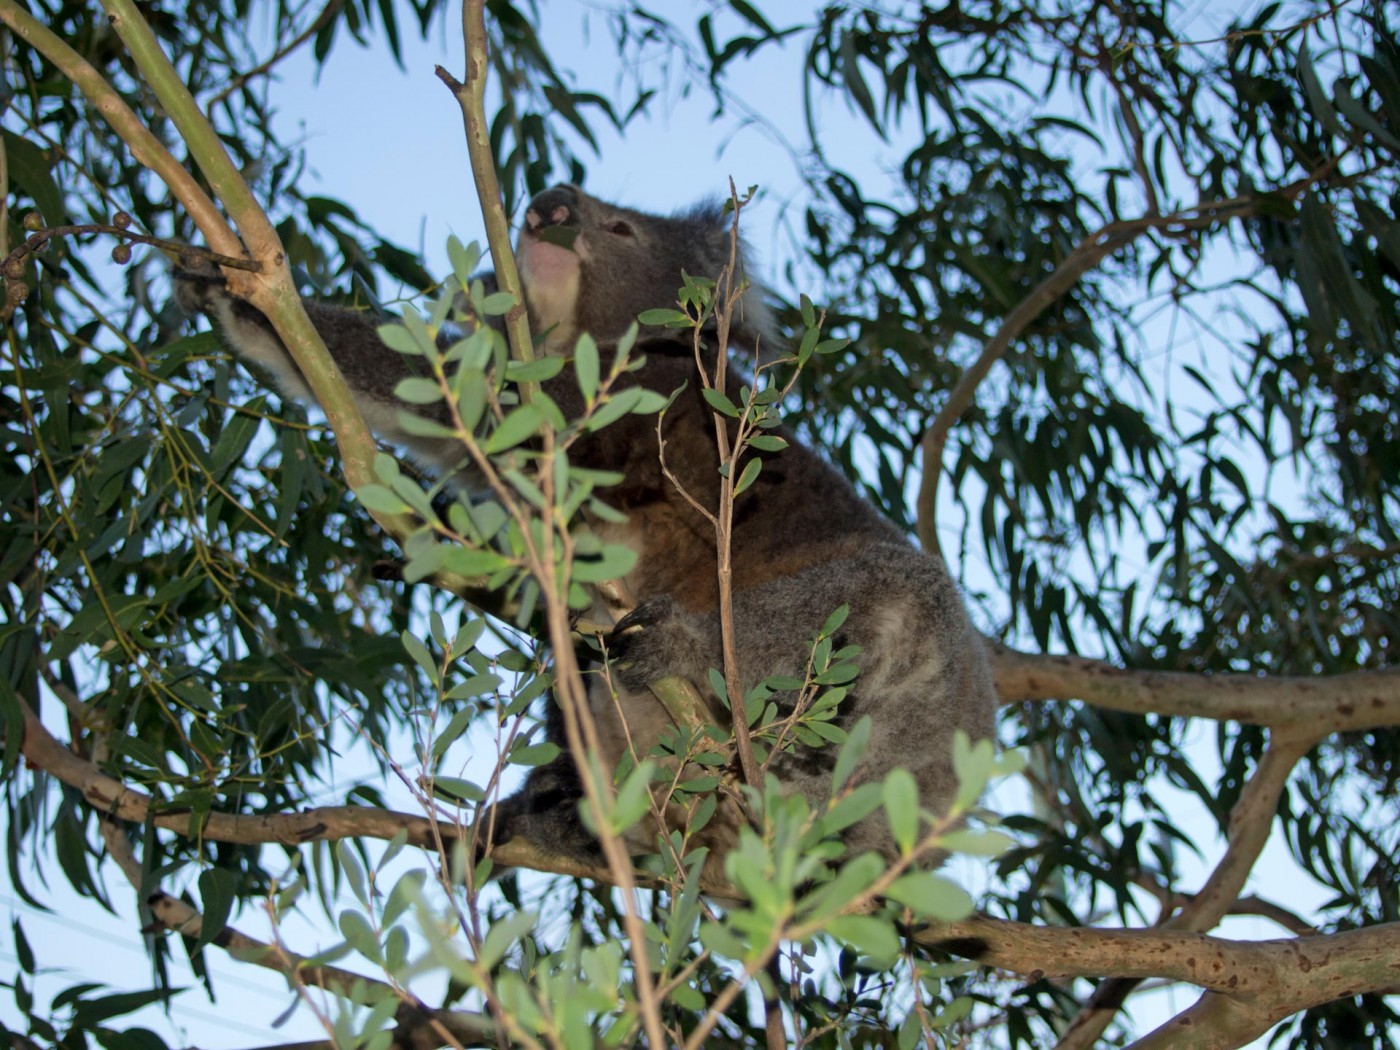 Koala at Kennett River, Great Ocean Road, Australia